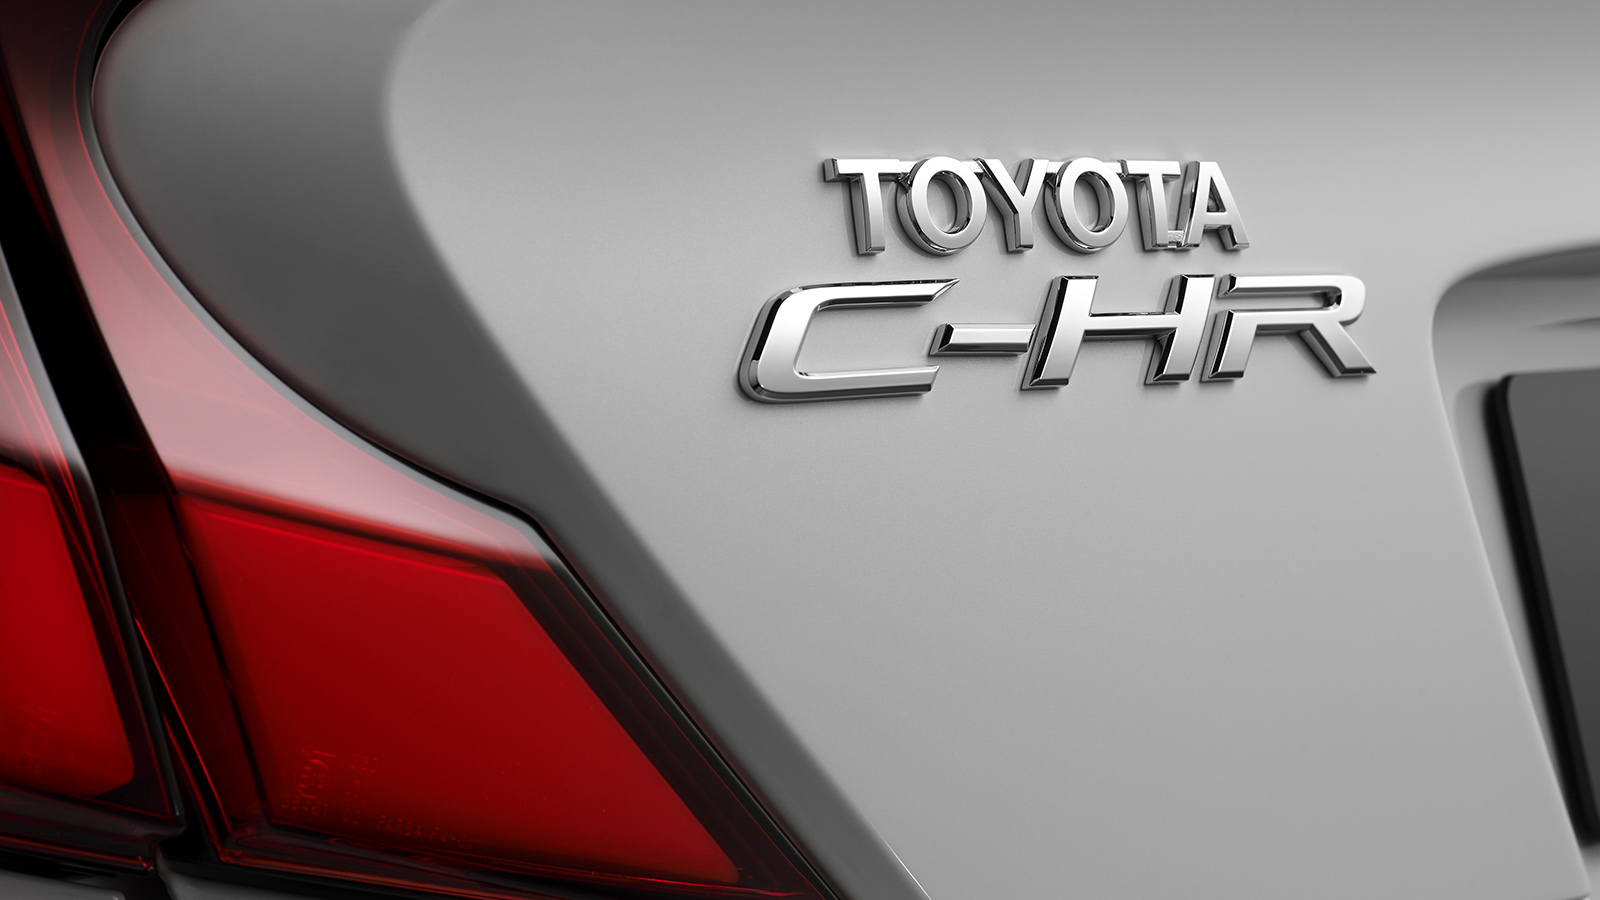 Toyota CH-R